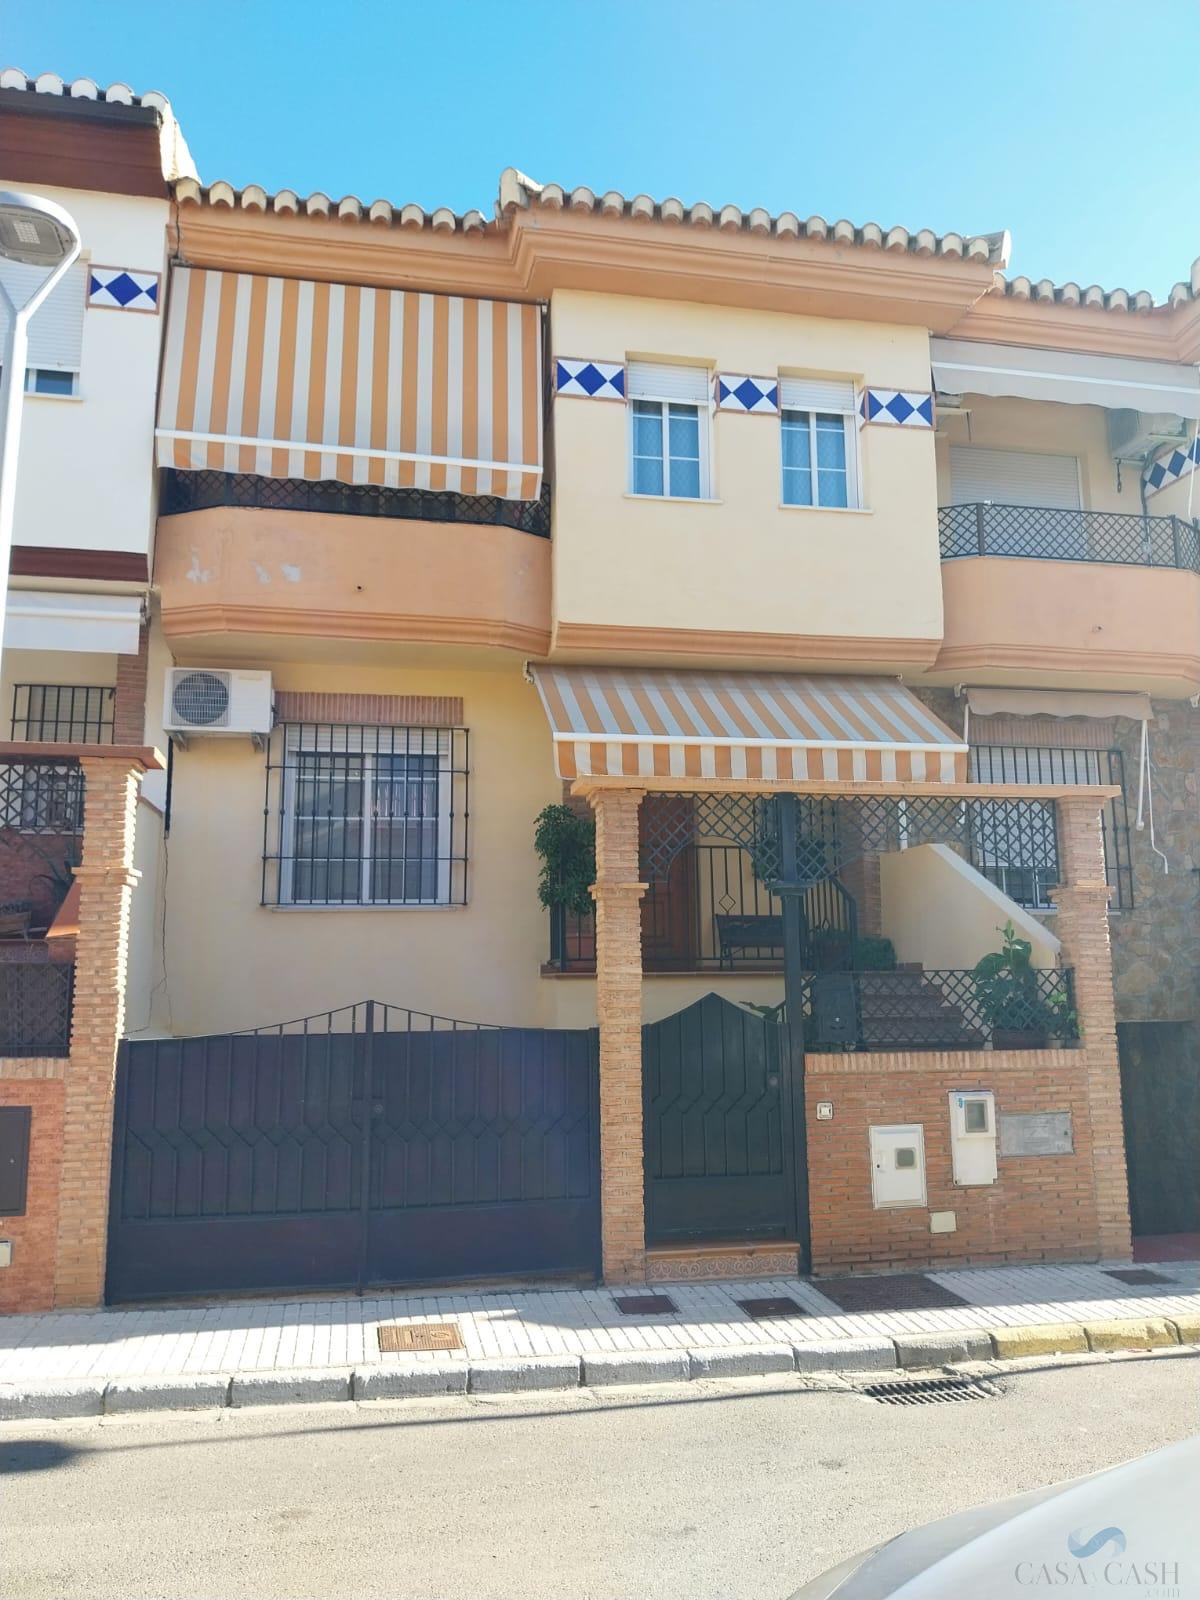 Salg av hus i Peligros